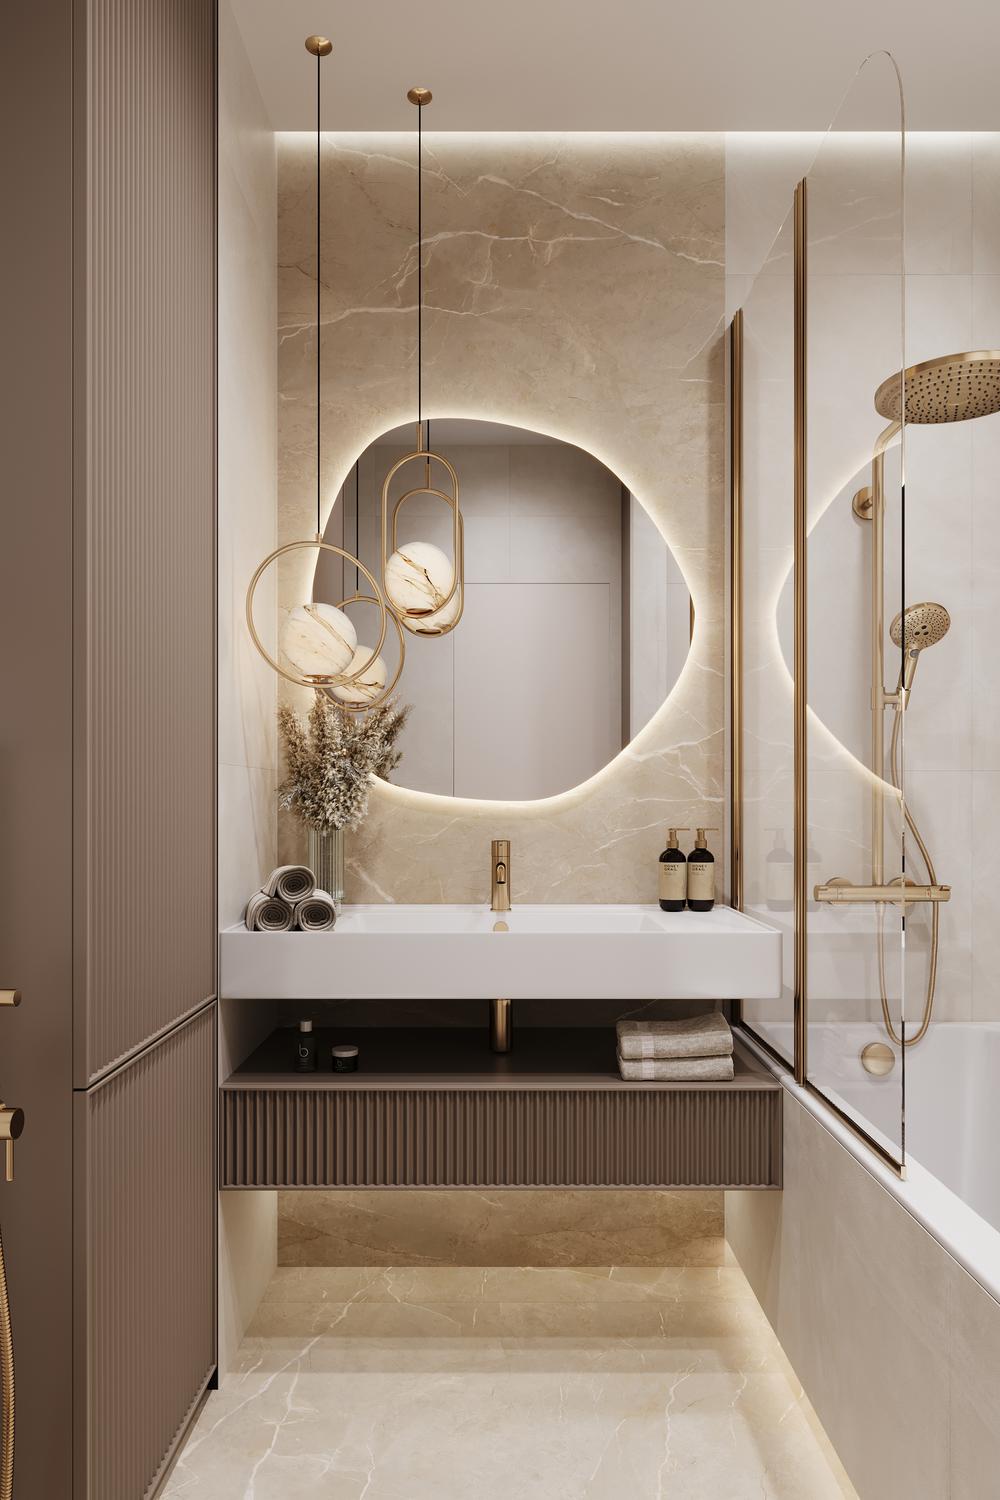 Необычный дизайн зеркала с подсветкой над раковиной для ванной